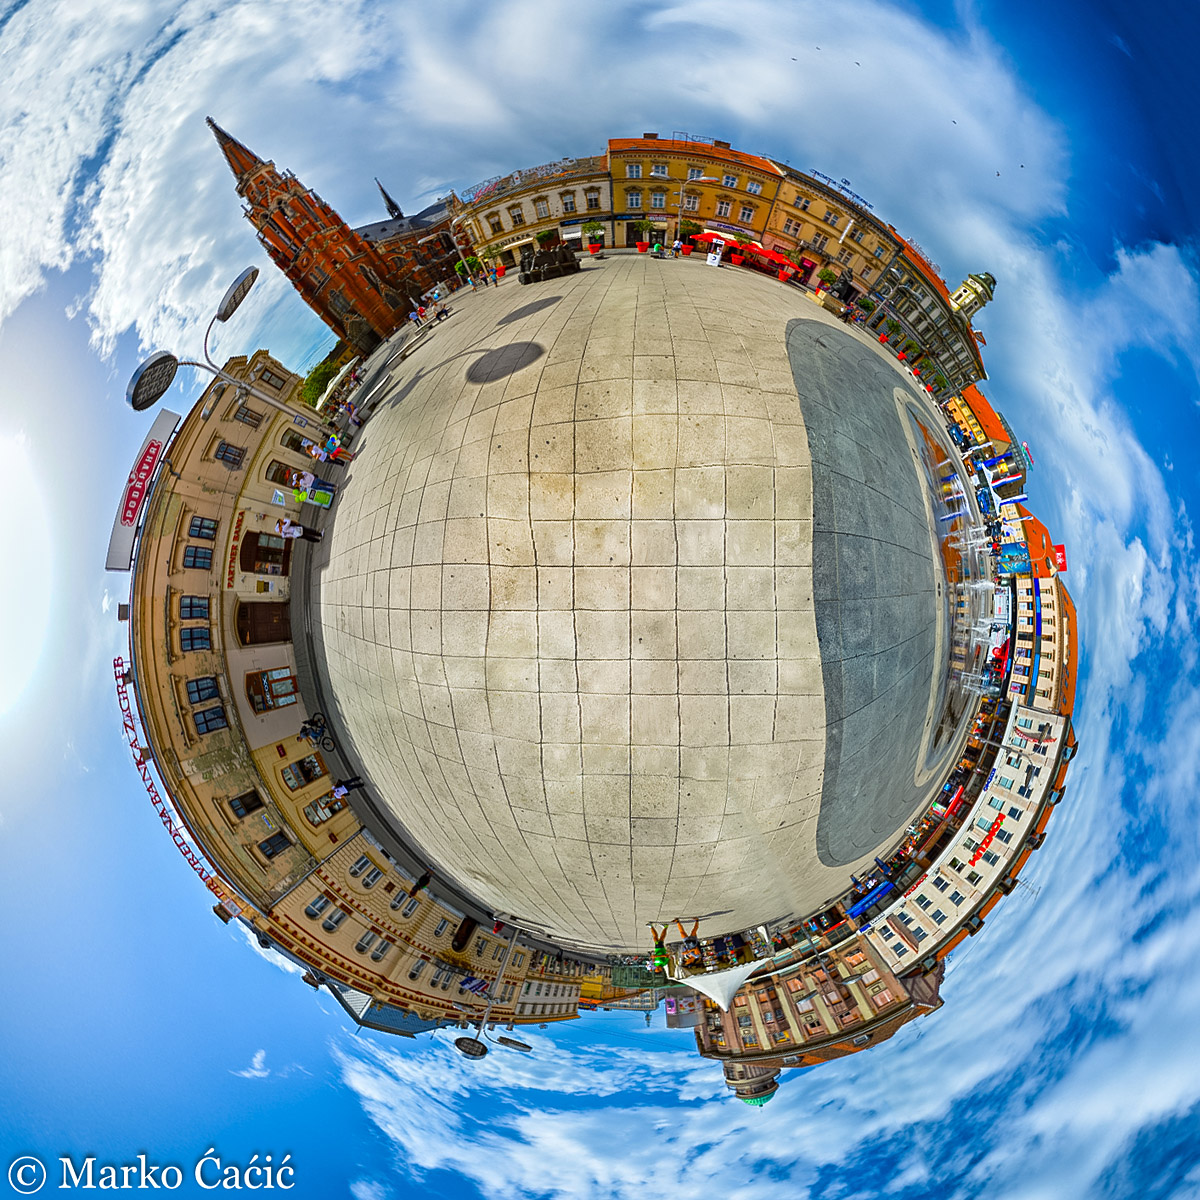 Grad na dlanu

Foto: Marko ai

Kljune rijei: trg katedrala montaza pticja perspektiva fisheye